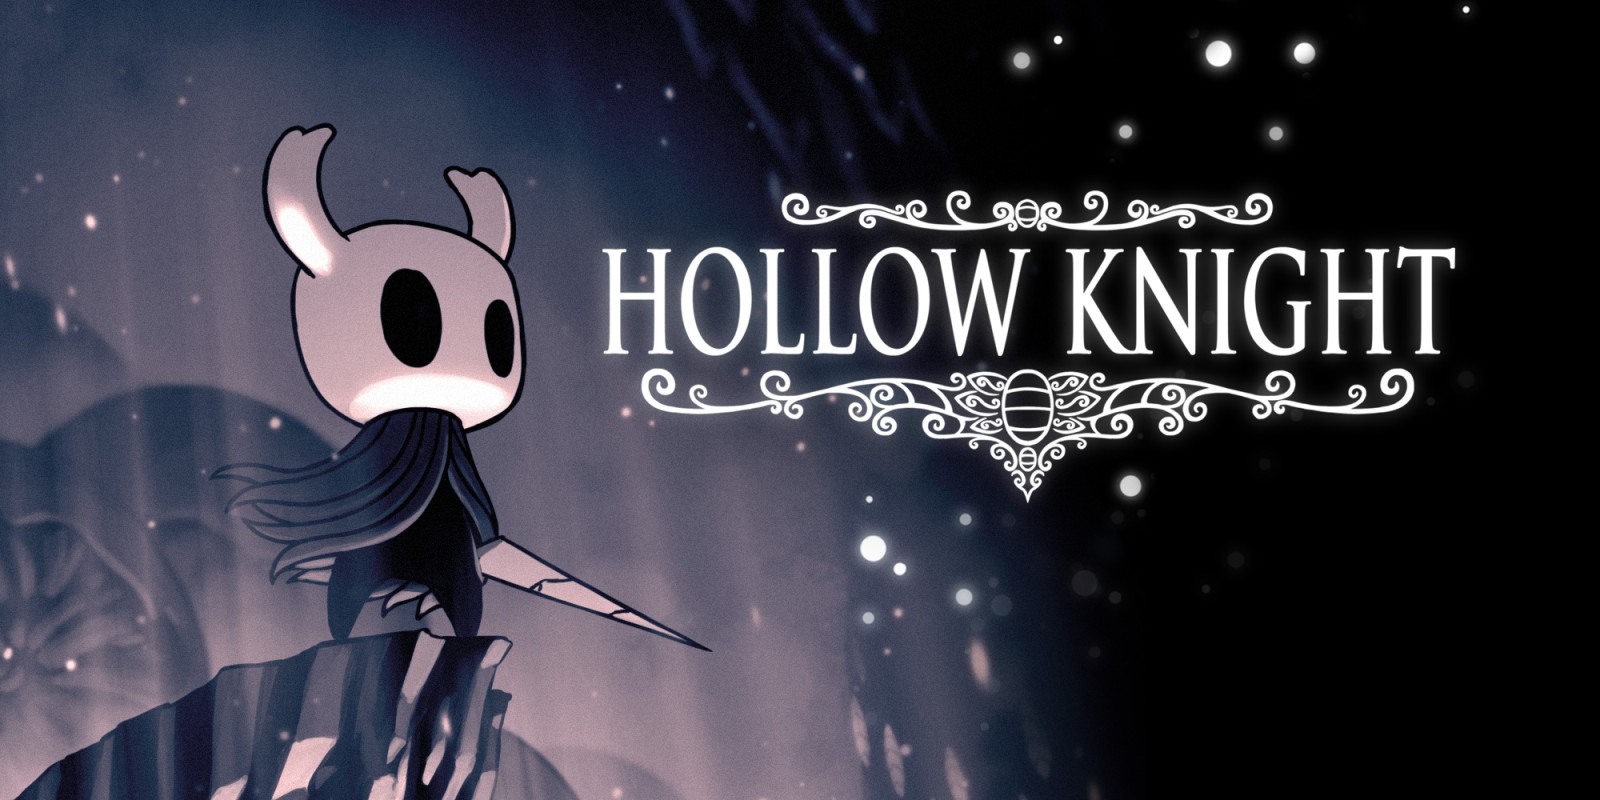 Super edizione fisica da collezione per Hollow Knight